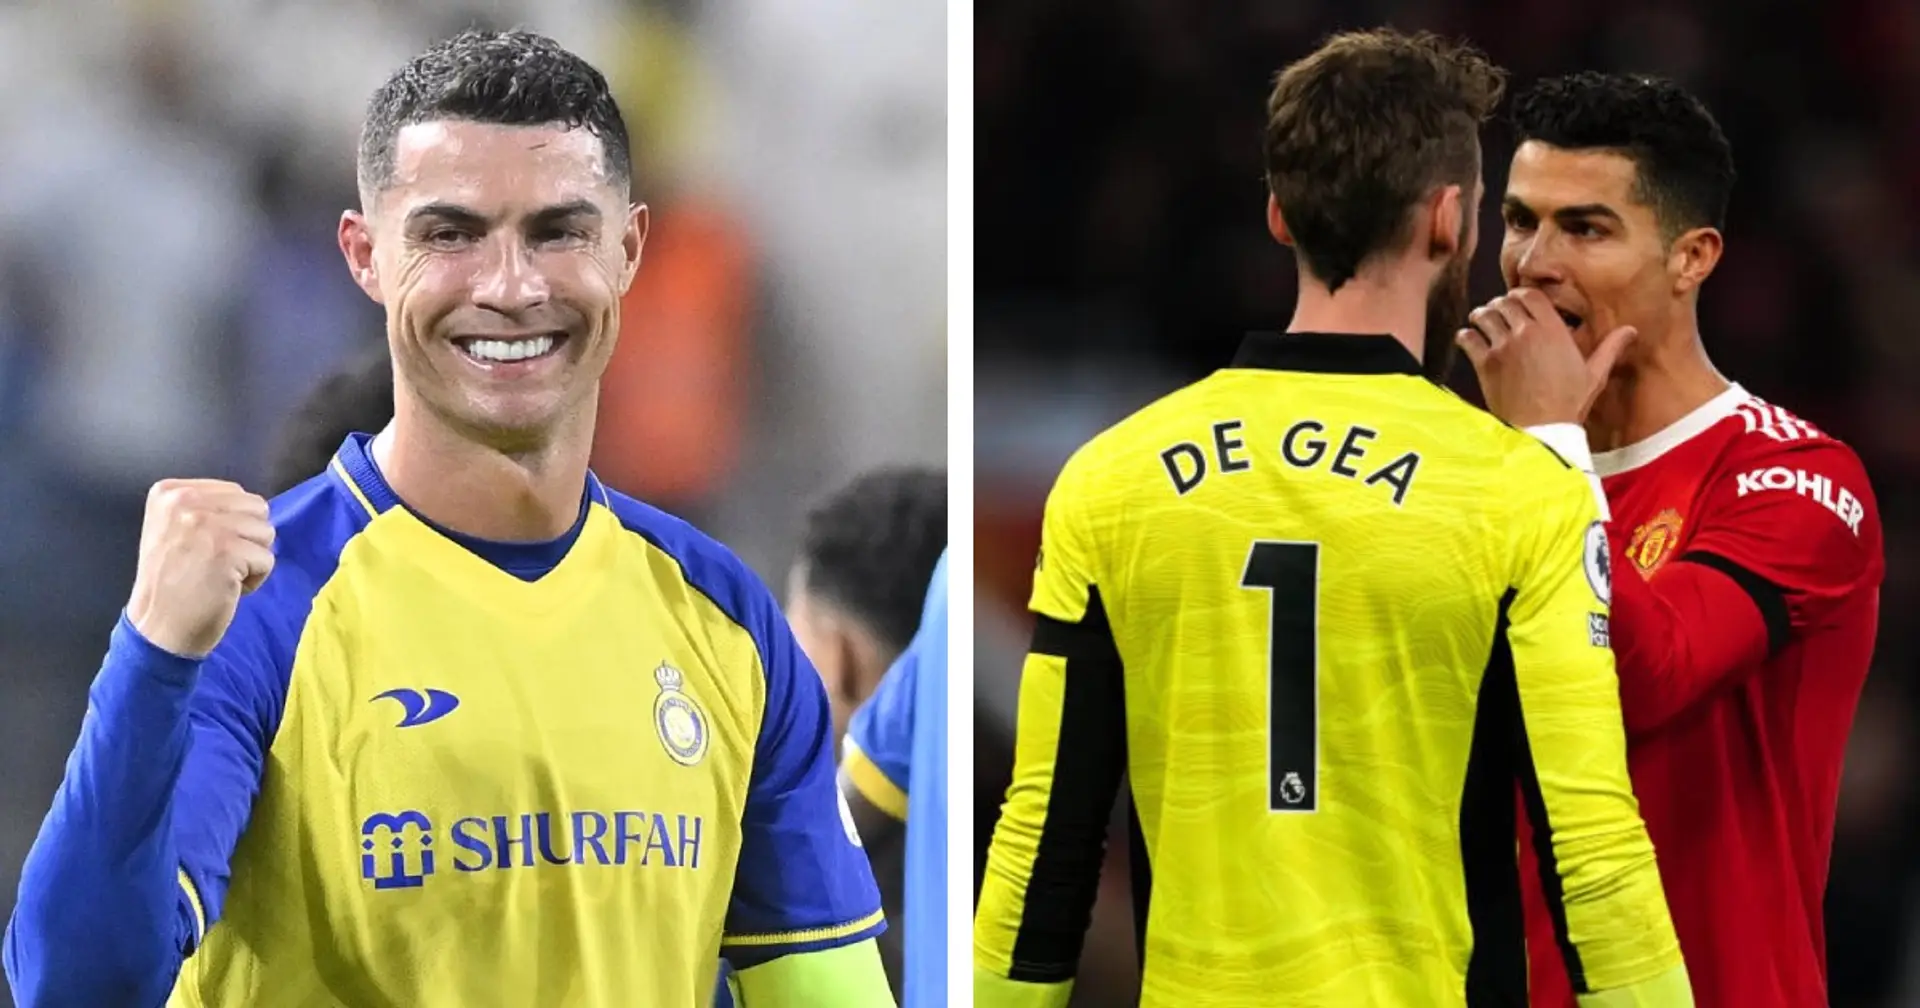 Tin chuyển nhượng trưa 25/7: De Gea tái hợp Ronaldo tại Al Nassr; Vụ Manchester United đổi chủ đổ bể